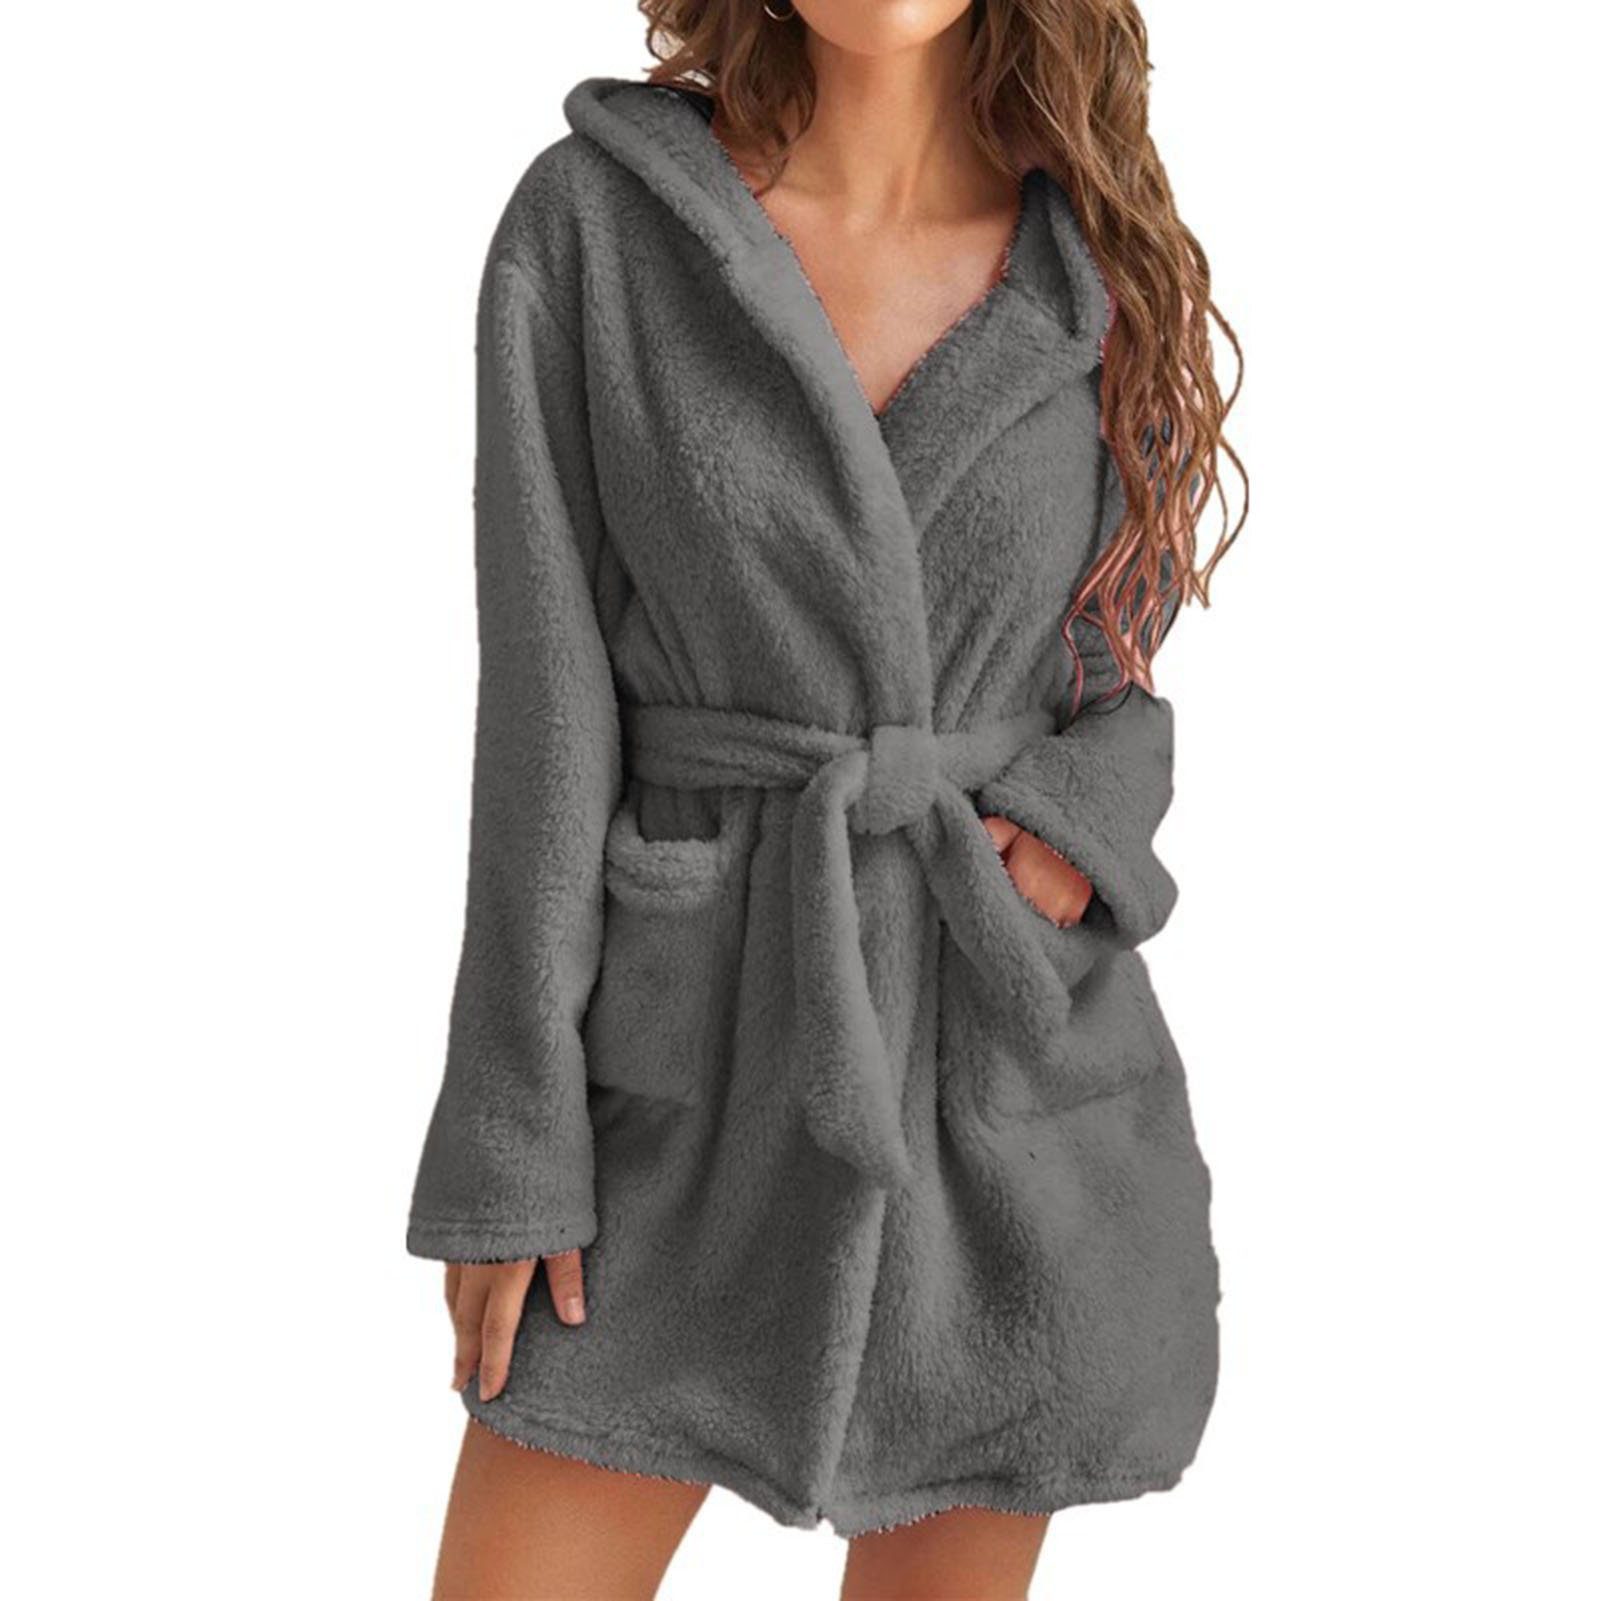 Blusmart Damenbademantel Damen-Handtuch-Bademantel Mit 2 Taschen, Atmungsaktiv, Bequem, Für grey